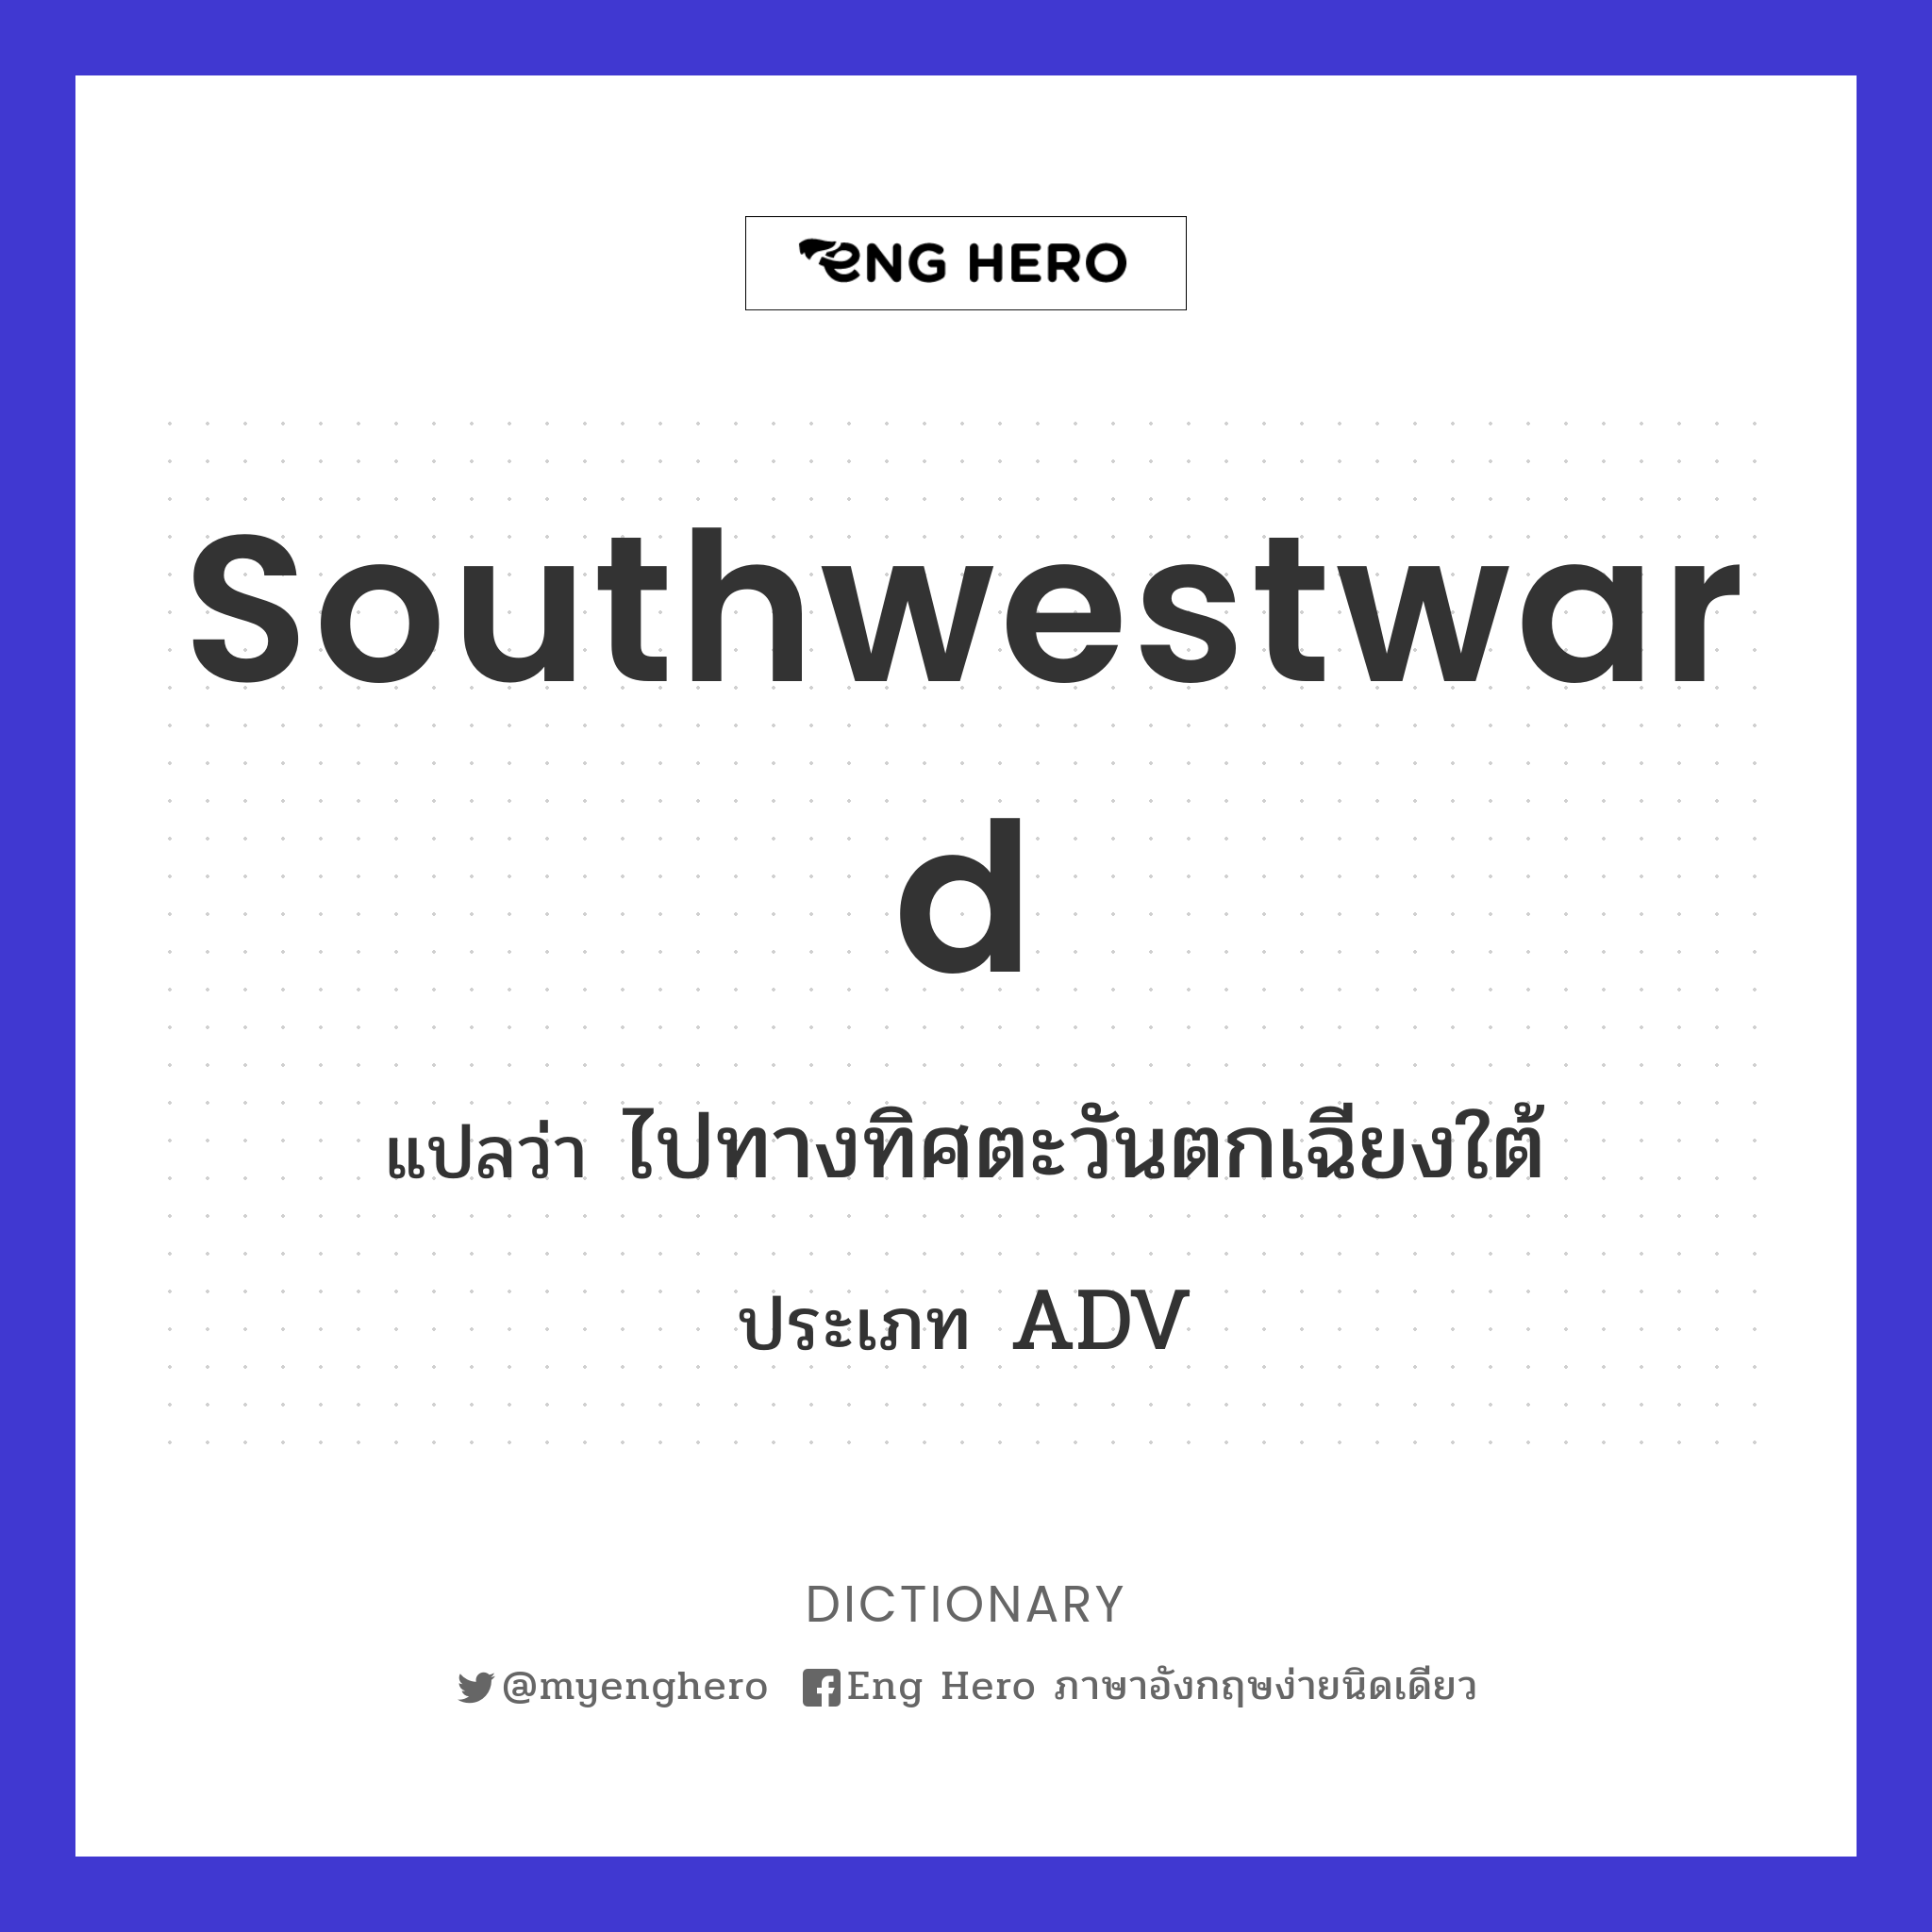 southwestward